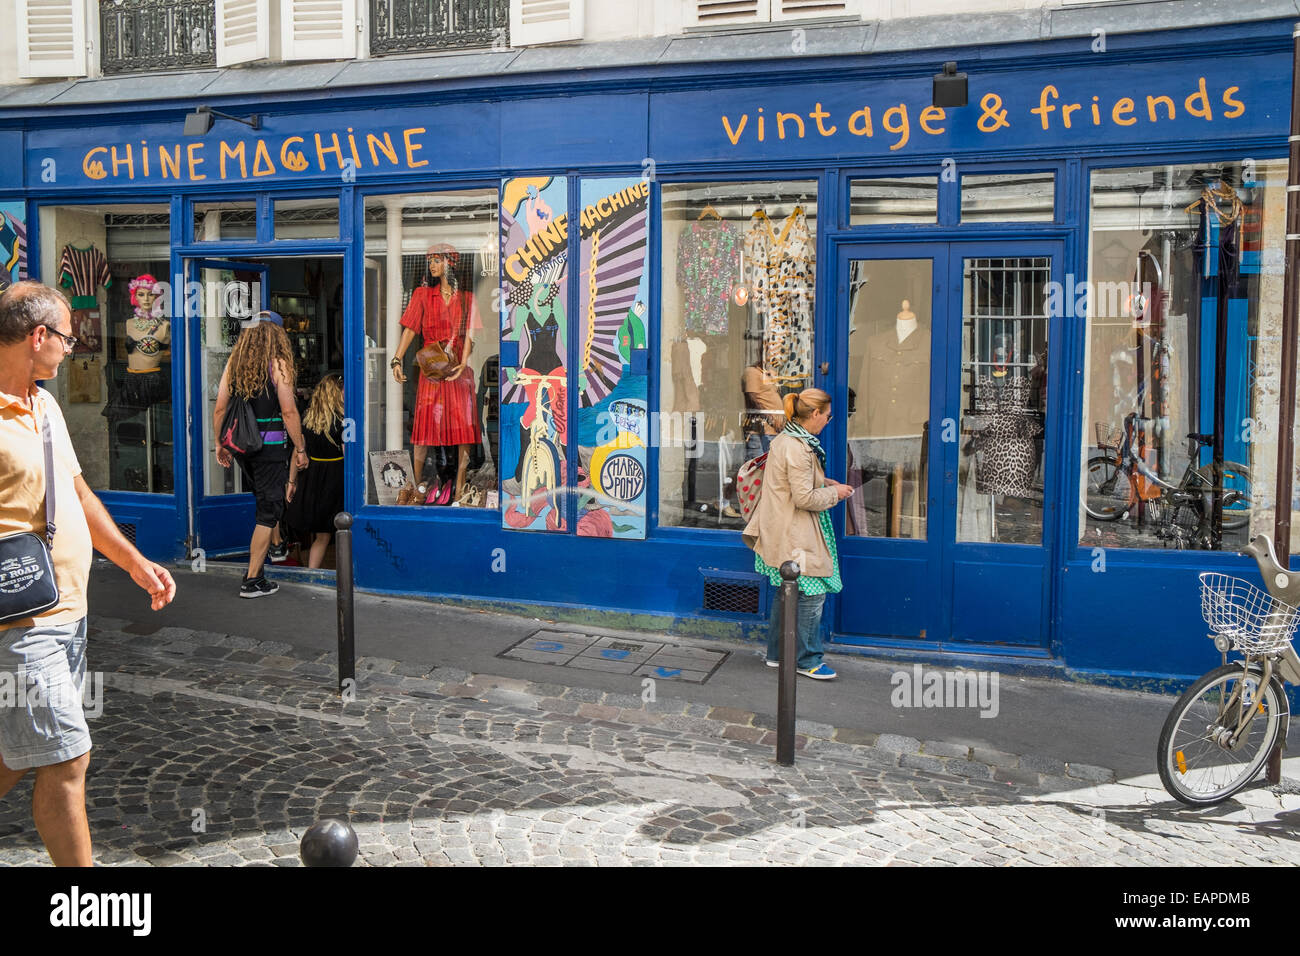 Chine machine vintage fashion store dans le quartier de Montmartre, rue des Martyrs, Paris, ile de france, france Banque D'Images